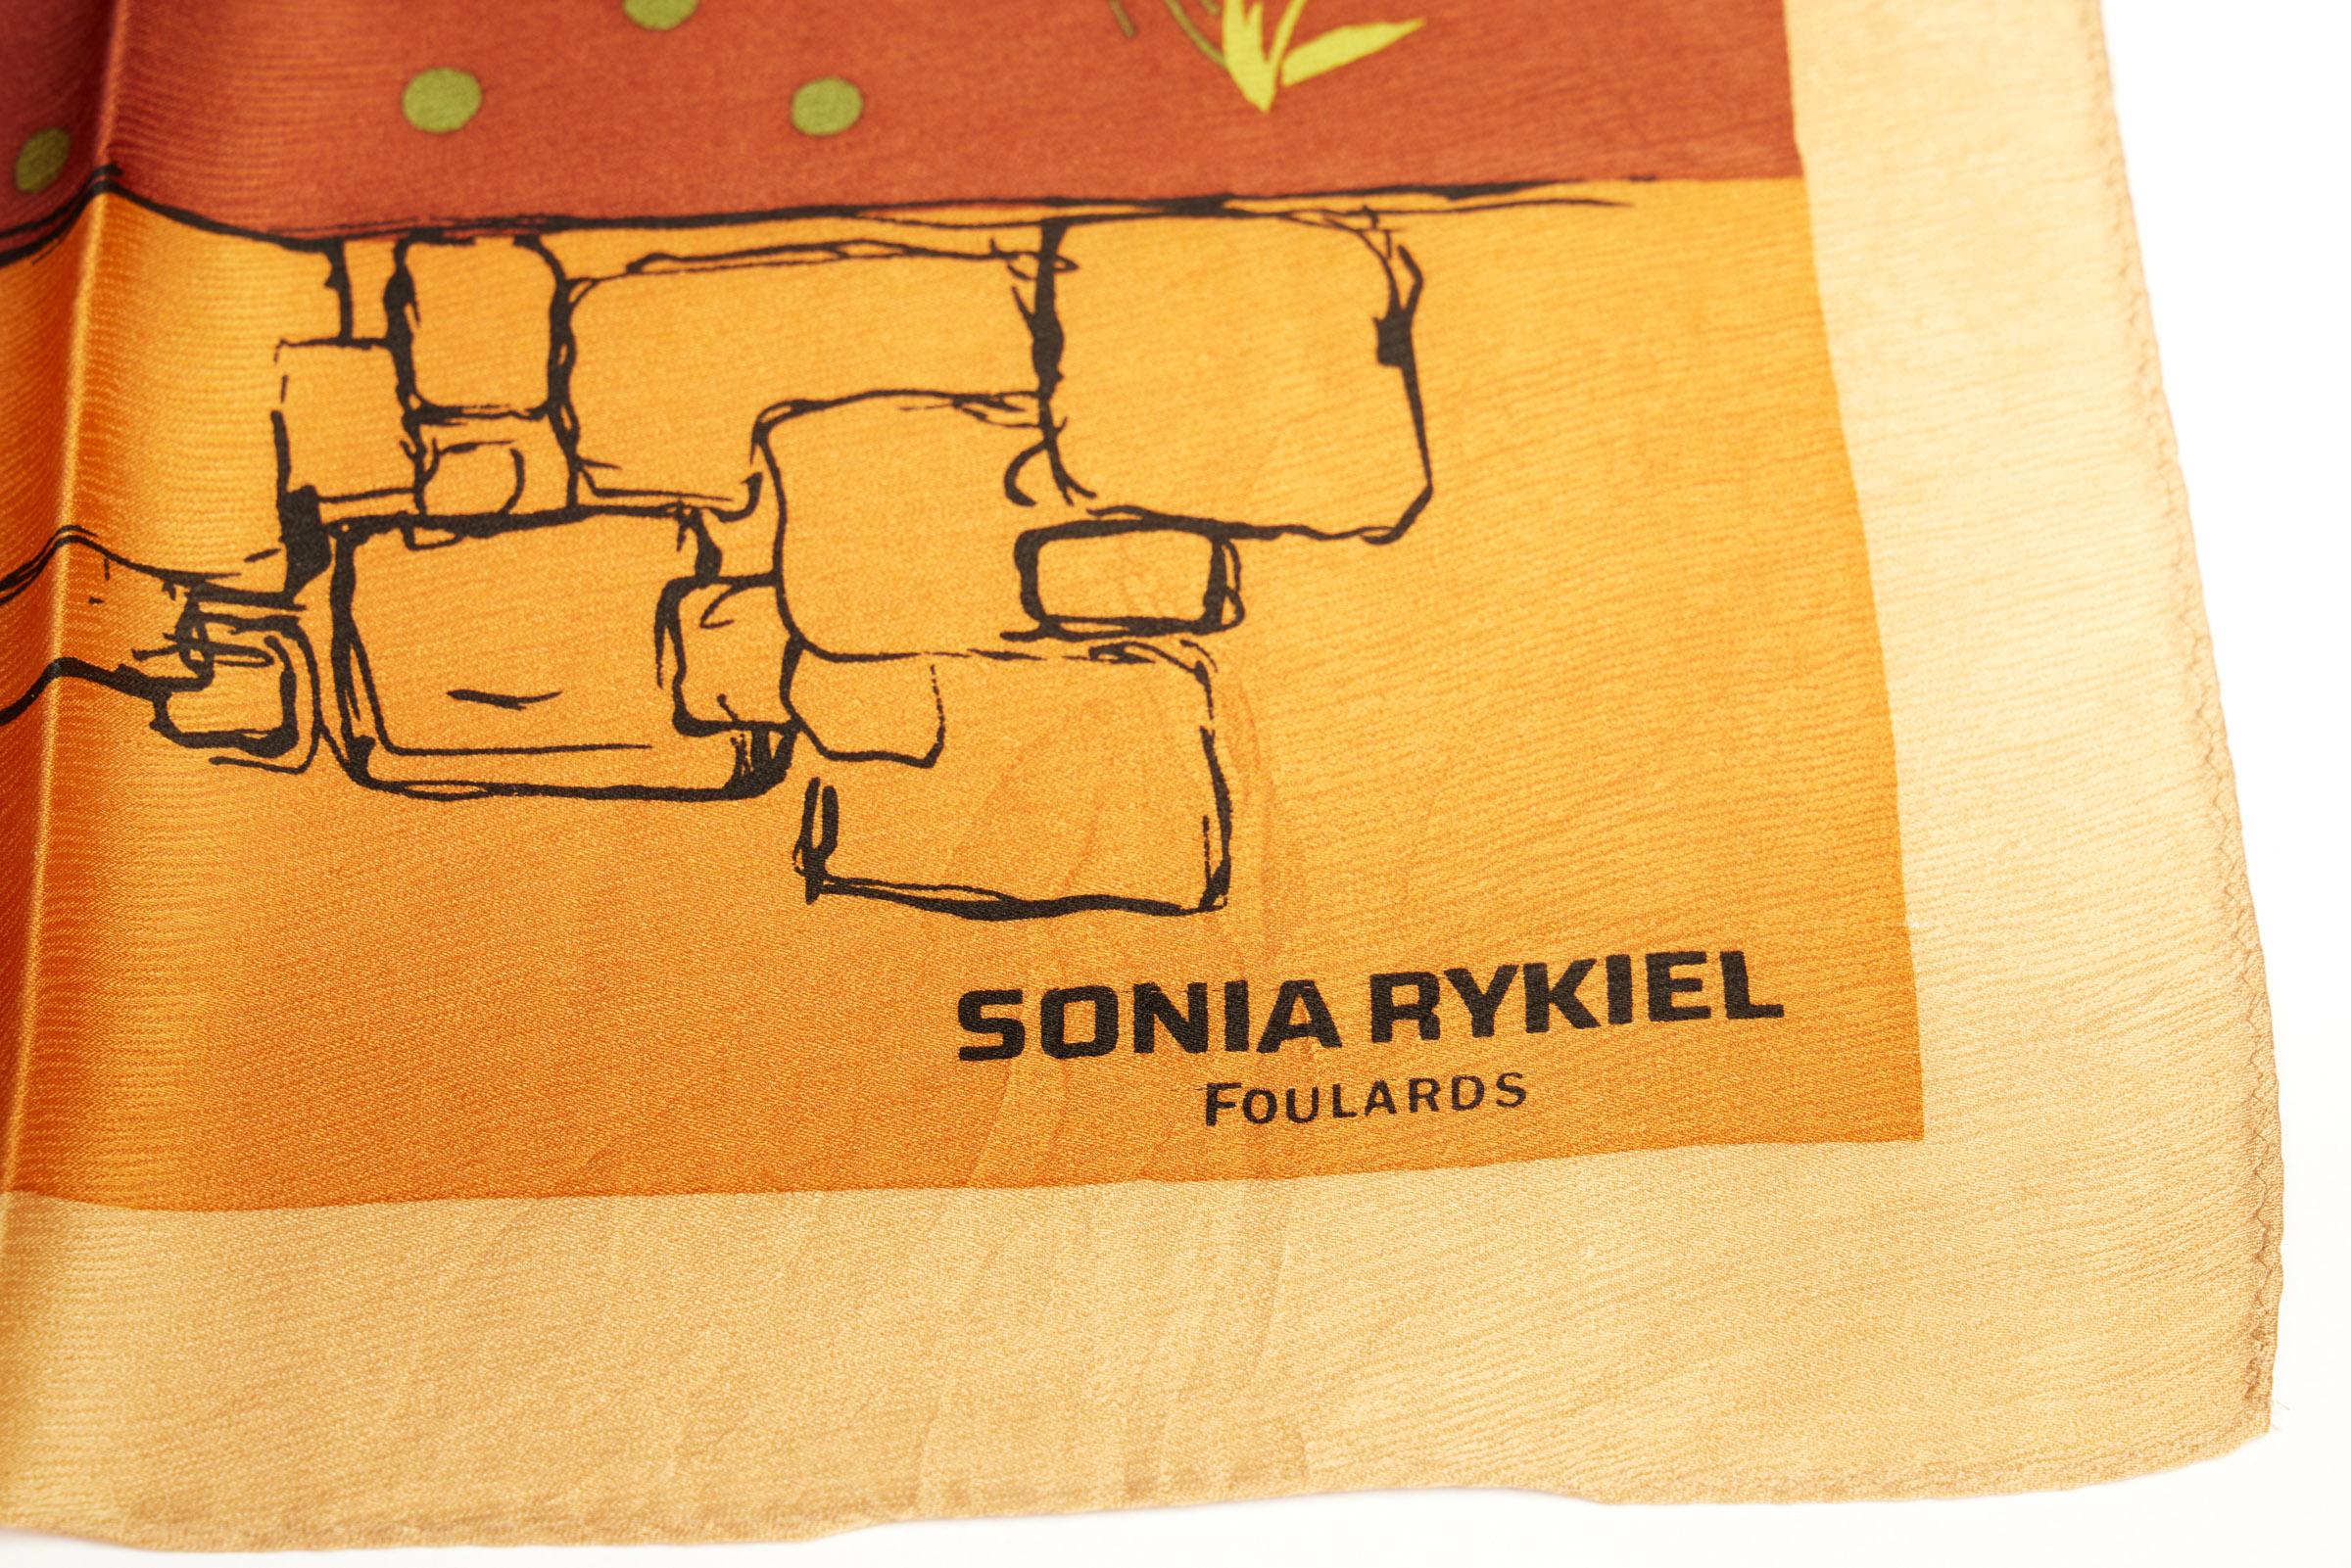 Foulard en soie à motifs de jeux Sonia Rykiel Paris. Combinaison d'orange et de vert. Étiquette d'entretien.